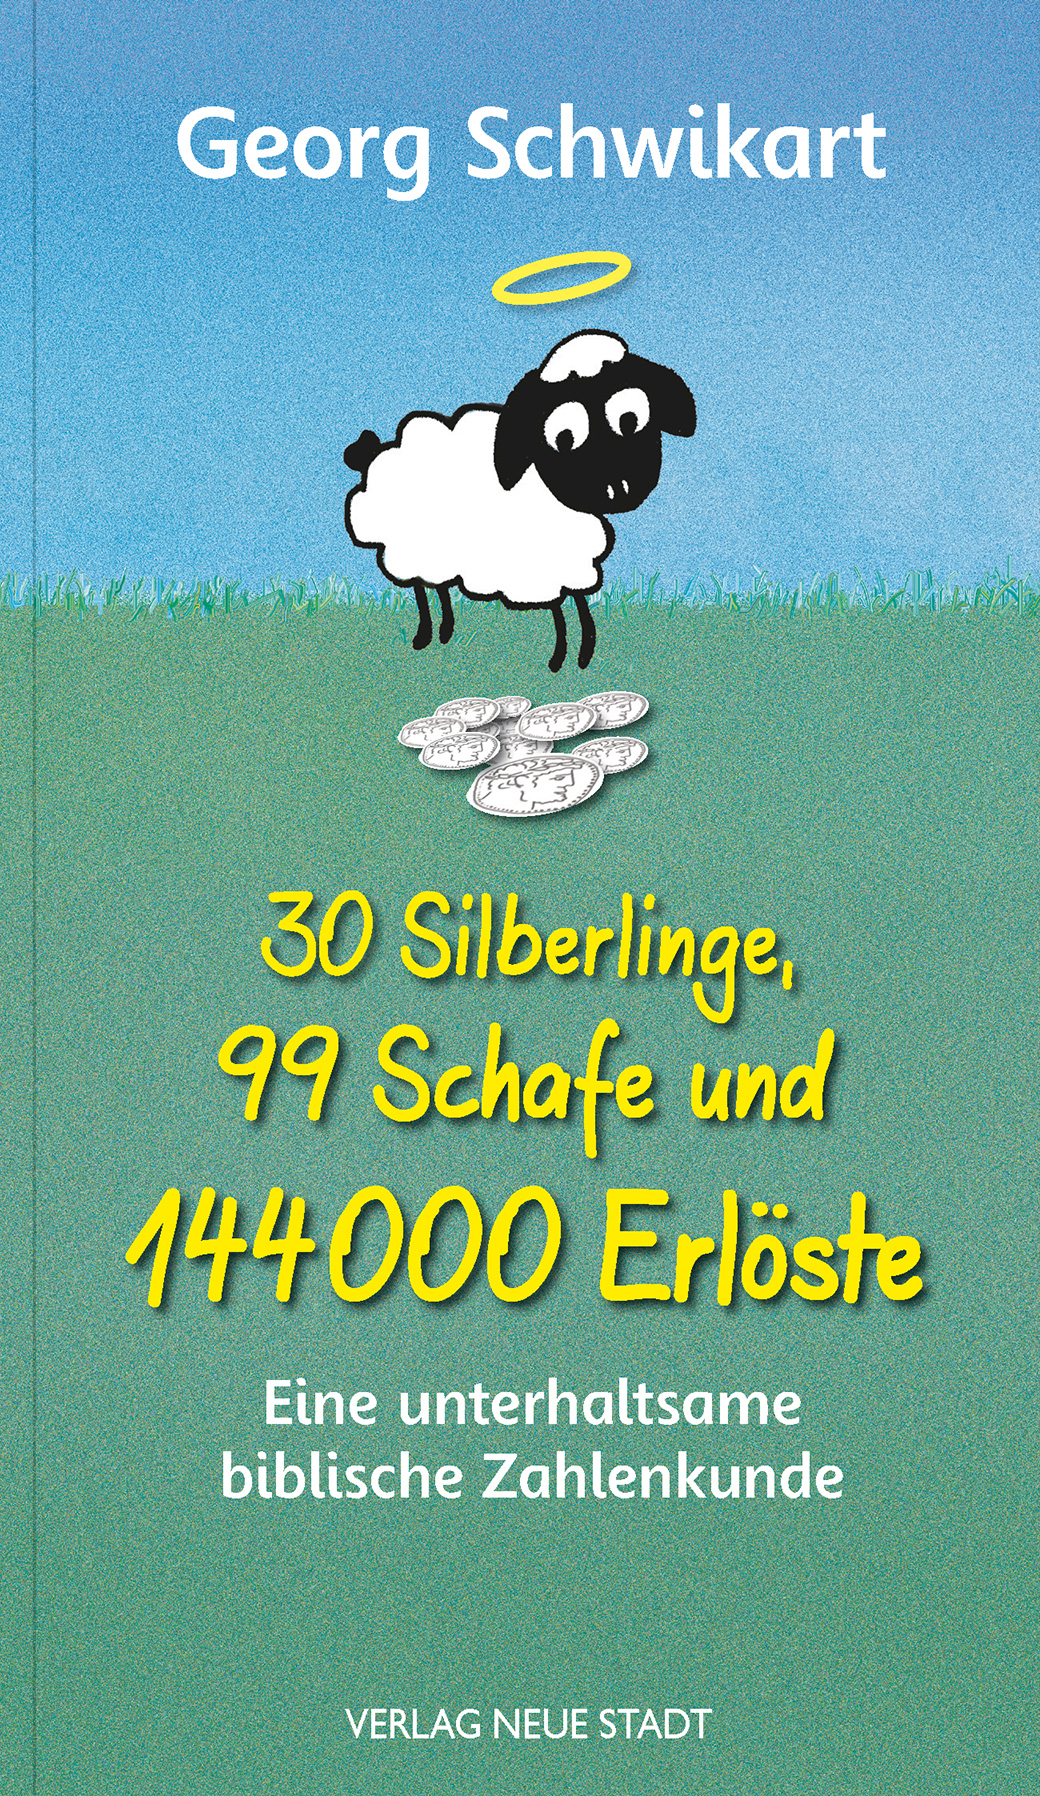 30 Silberlinge, 99 Schafe und 144000 Erlöste - Cover